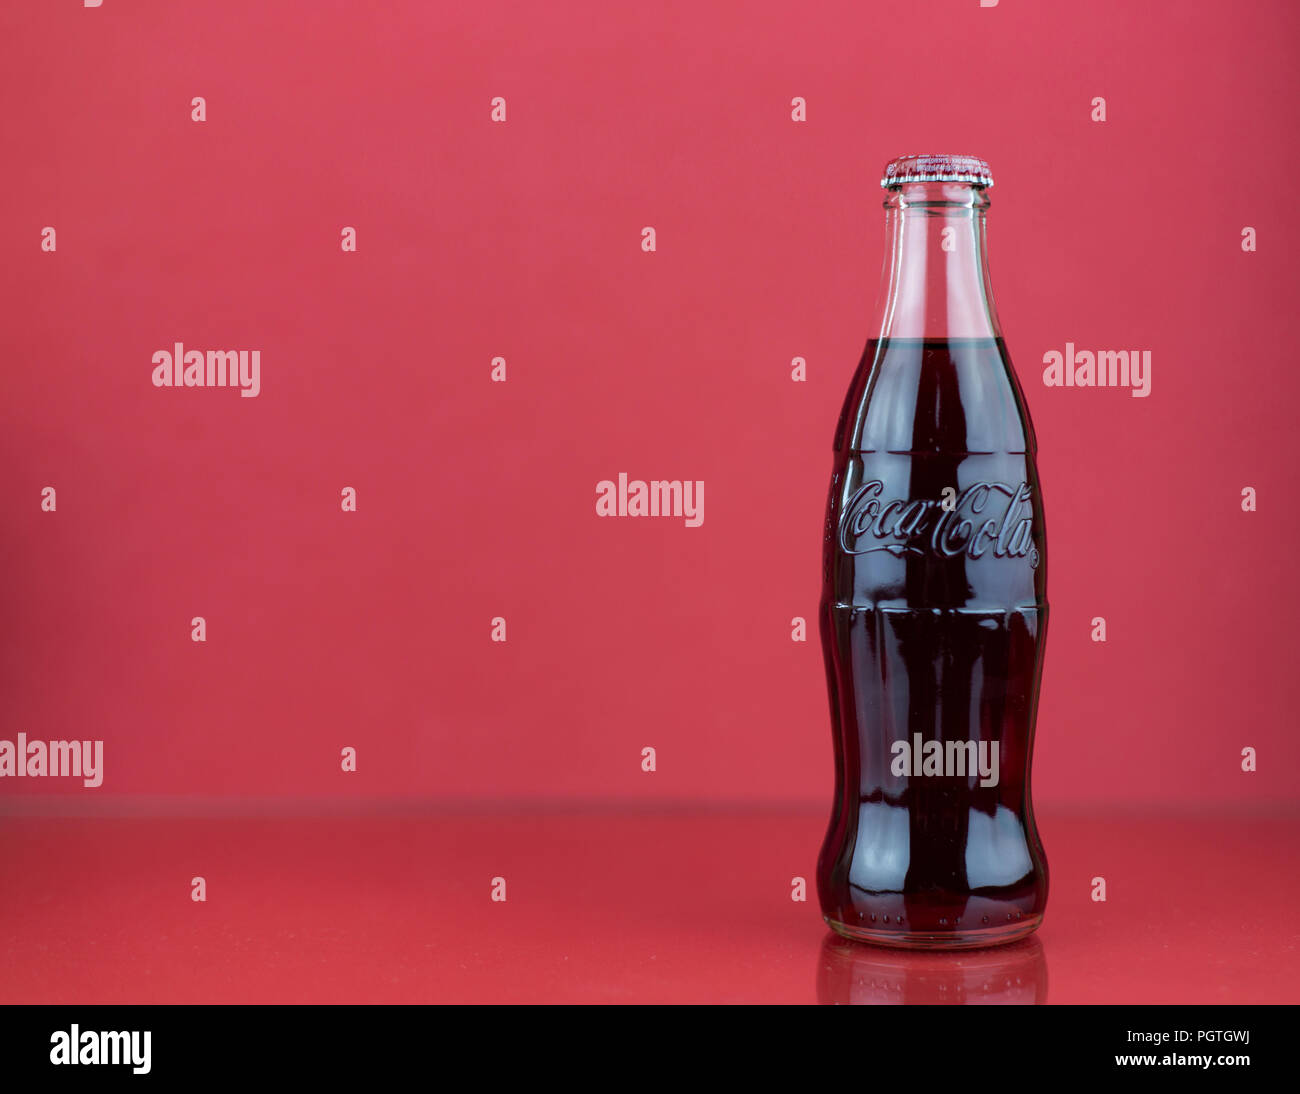 Seltene Coca-cola Kontur relief Glas Flasche auf rotem Hintergrund  Stockfotografie - Alamy